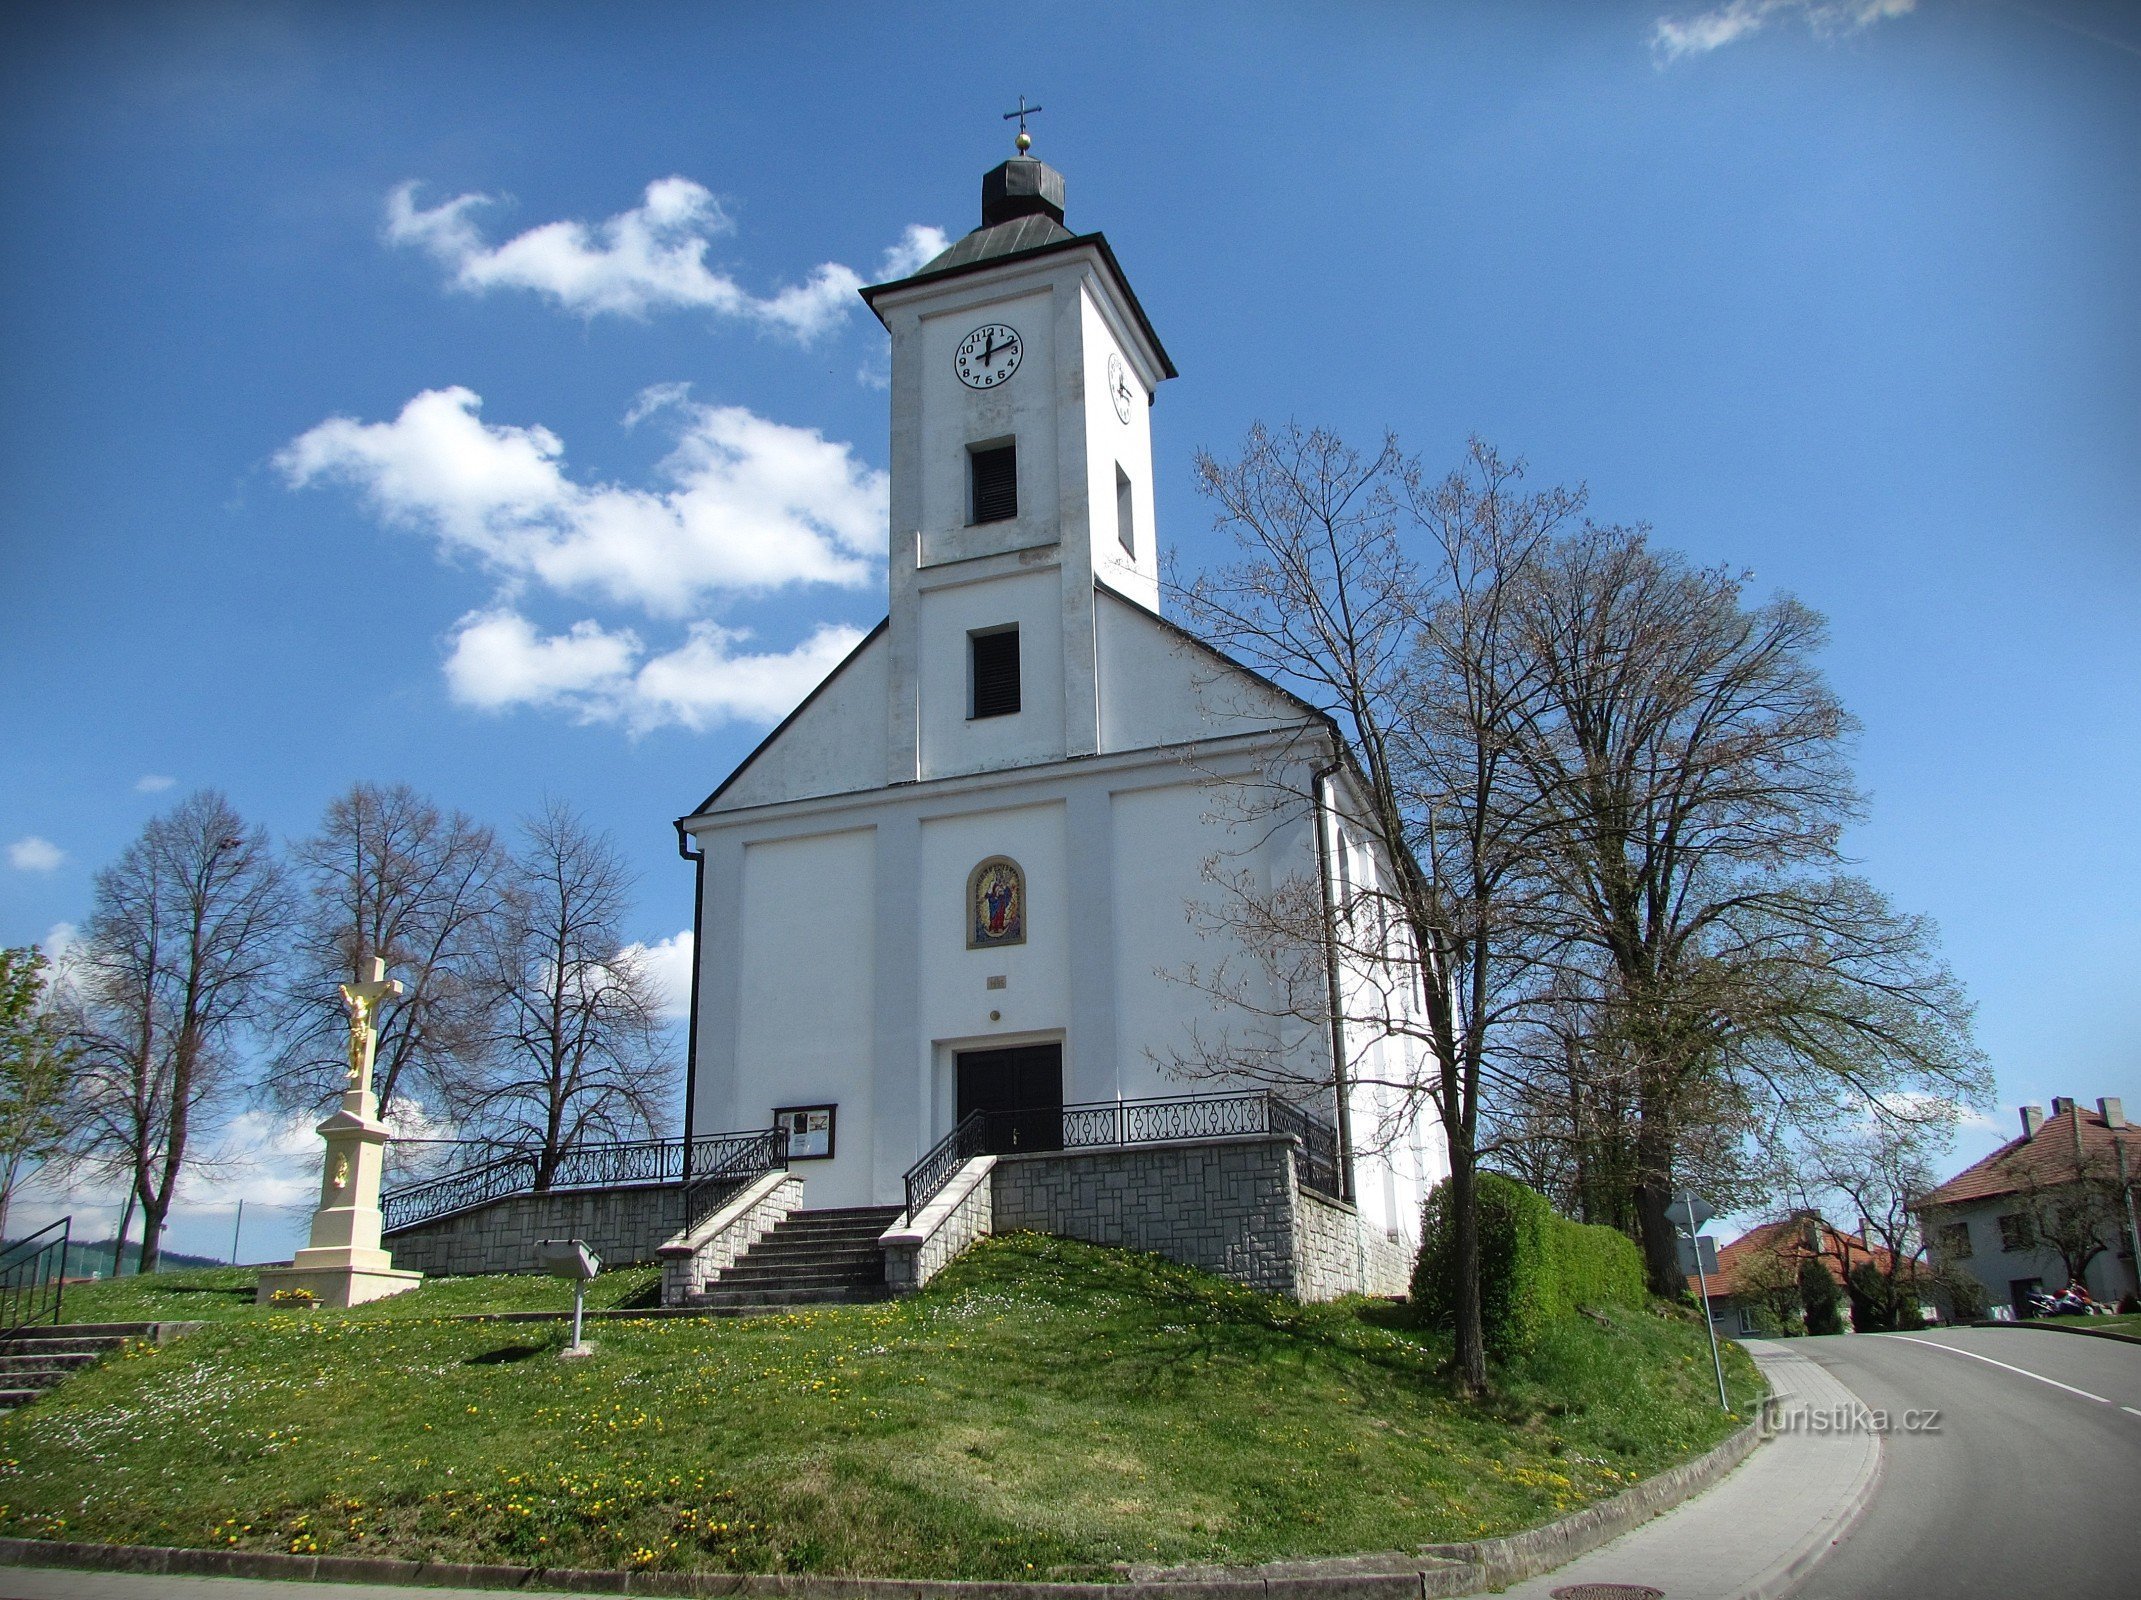 Slopné - kyrkan St. Roch